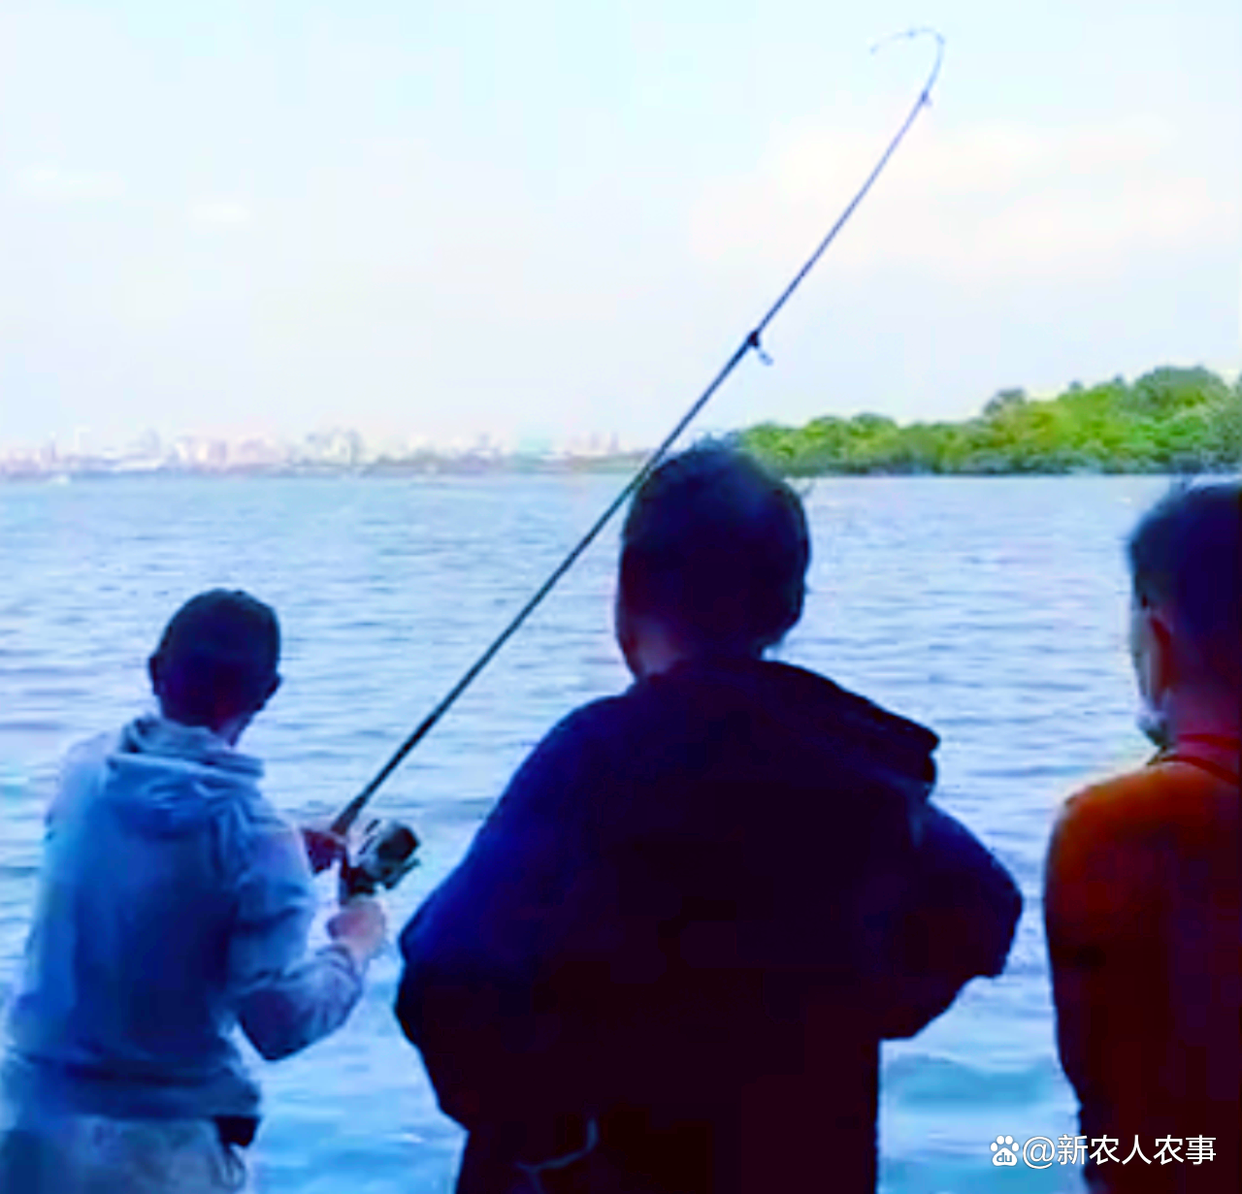 大爷在西湖苏堤钓获大青鱼，三人抬着匆匆离去，网友猜测没钓鱼证